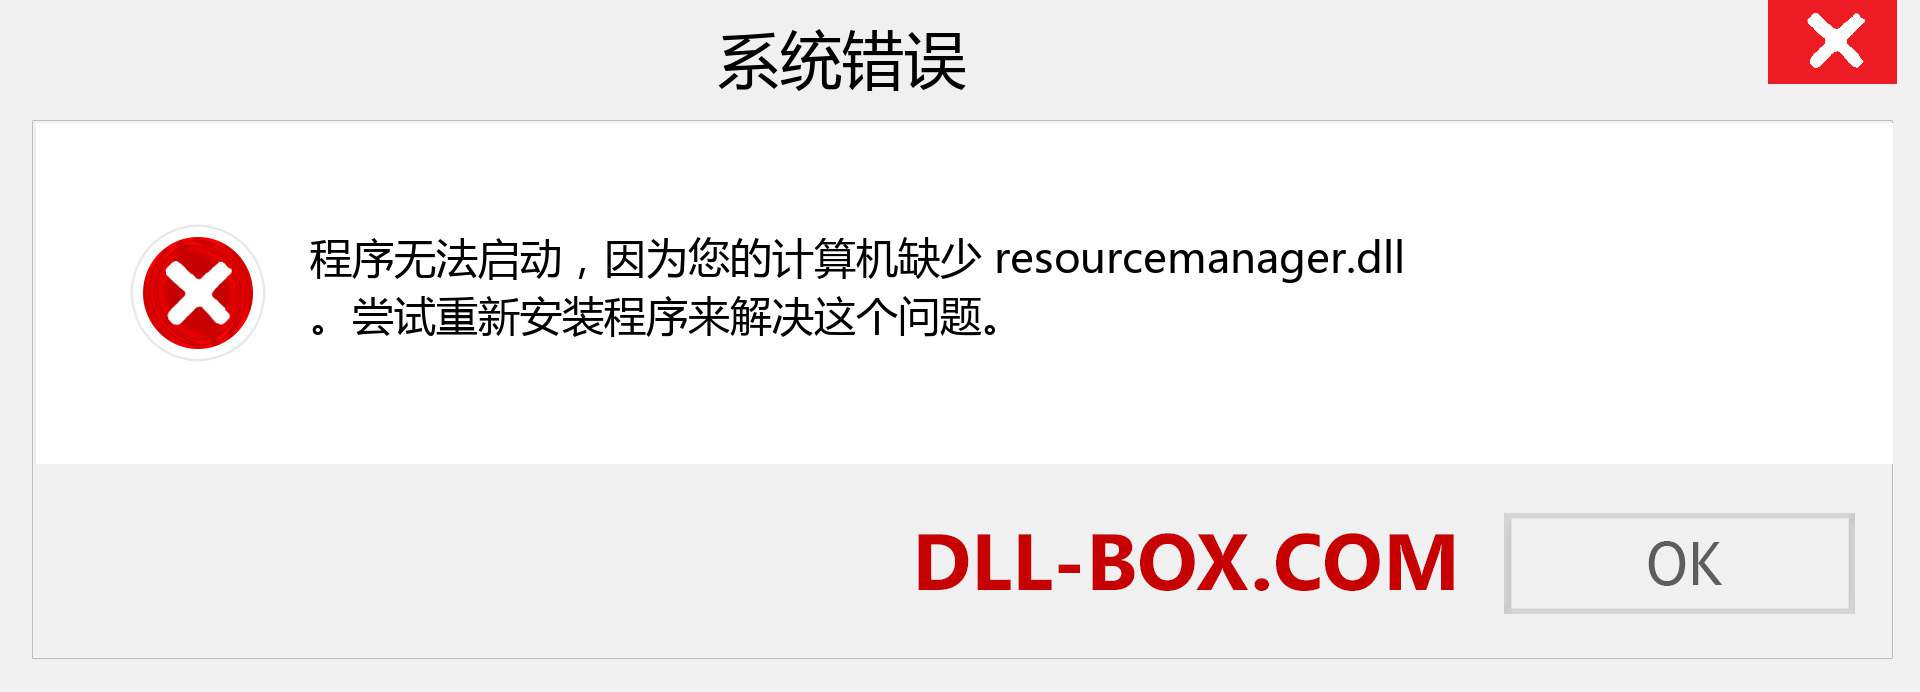 resourcemanager.dll 文件丢失？。 适用于 Windows 7、8、10 的下载 - 修复 Windows、照片、图像上的 resourcemanager dll 丢失错误